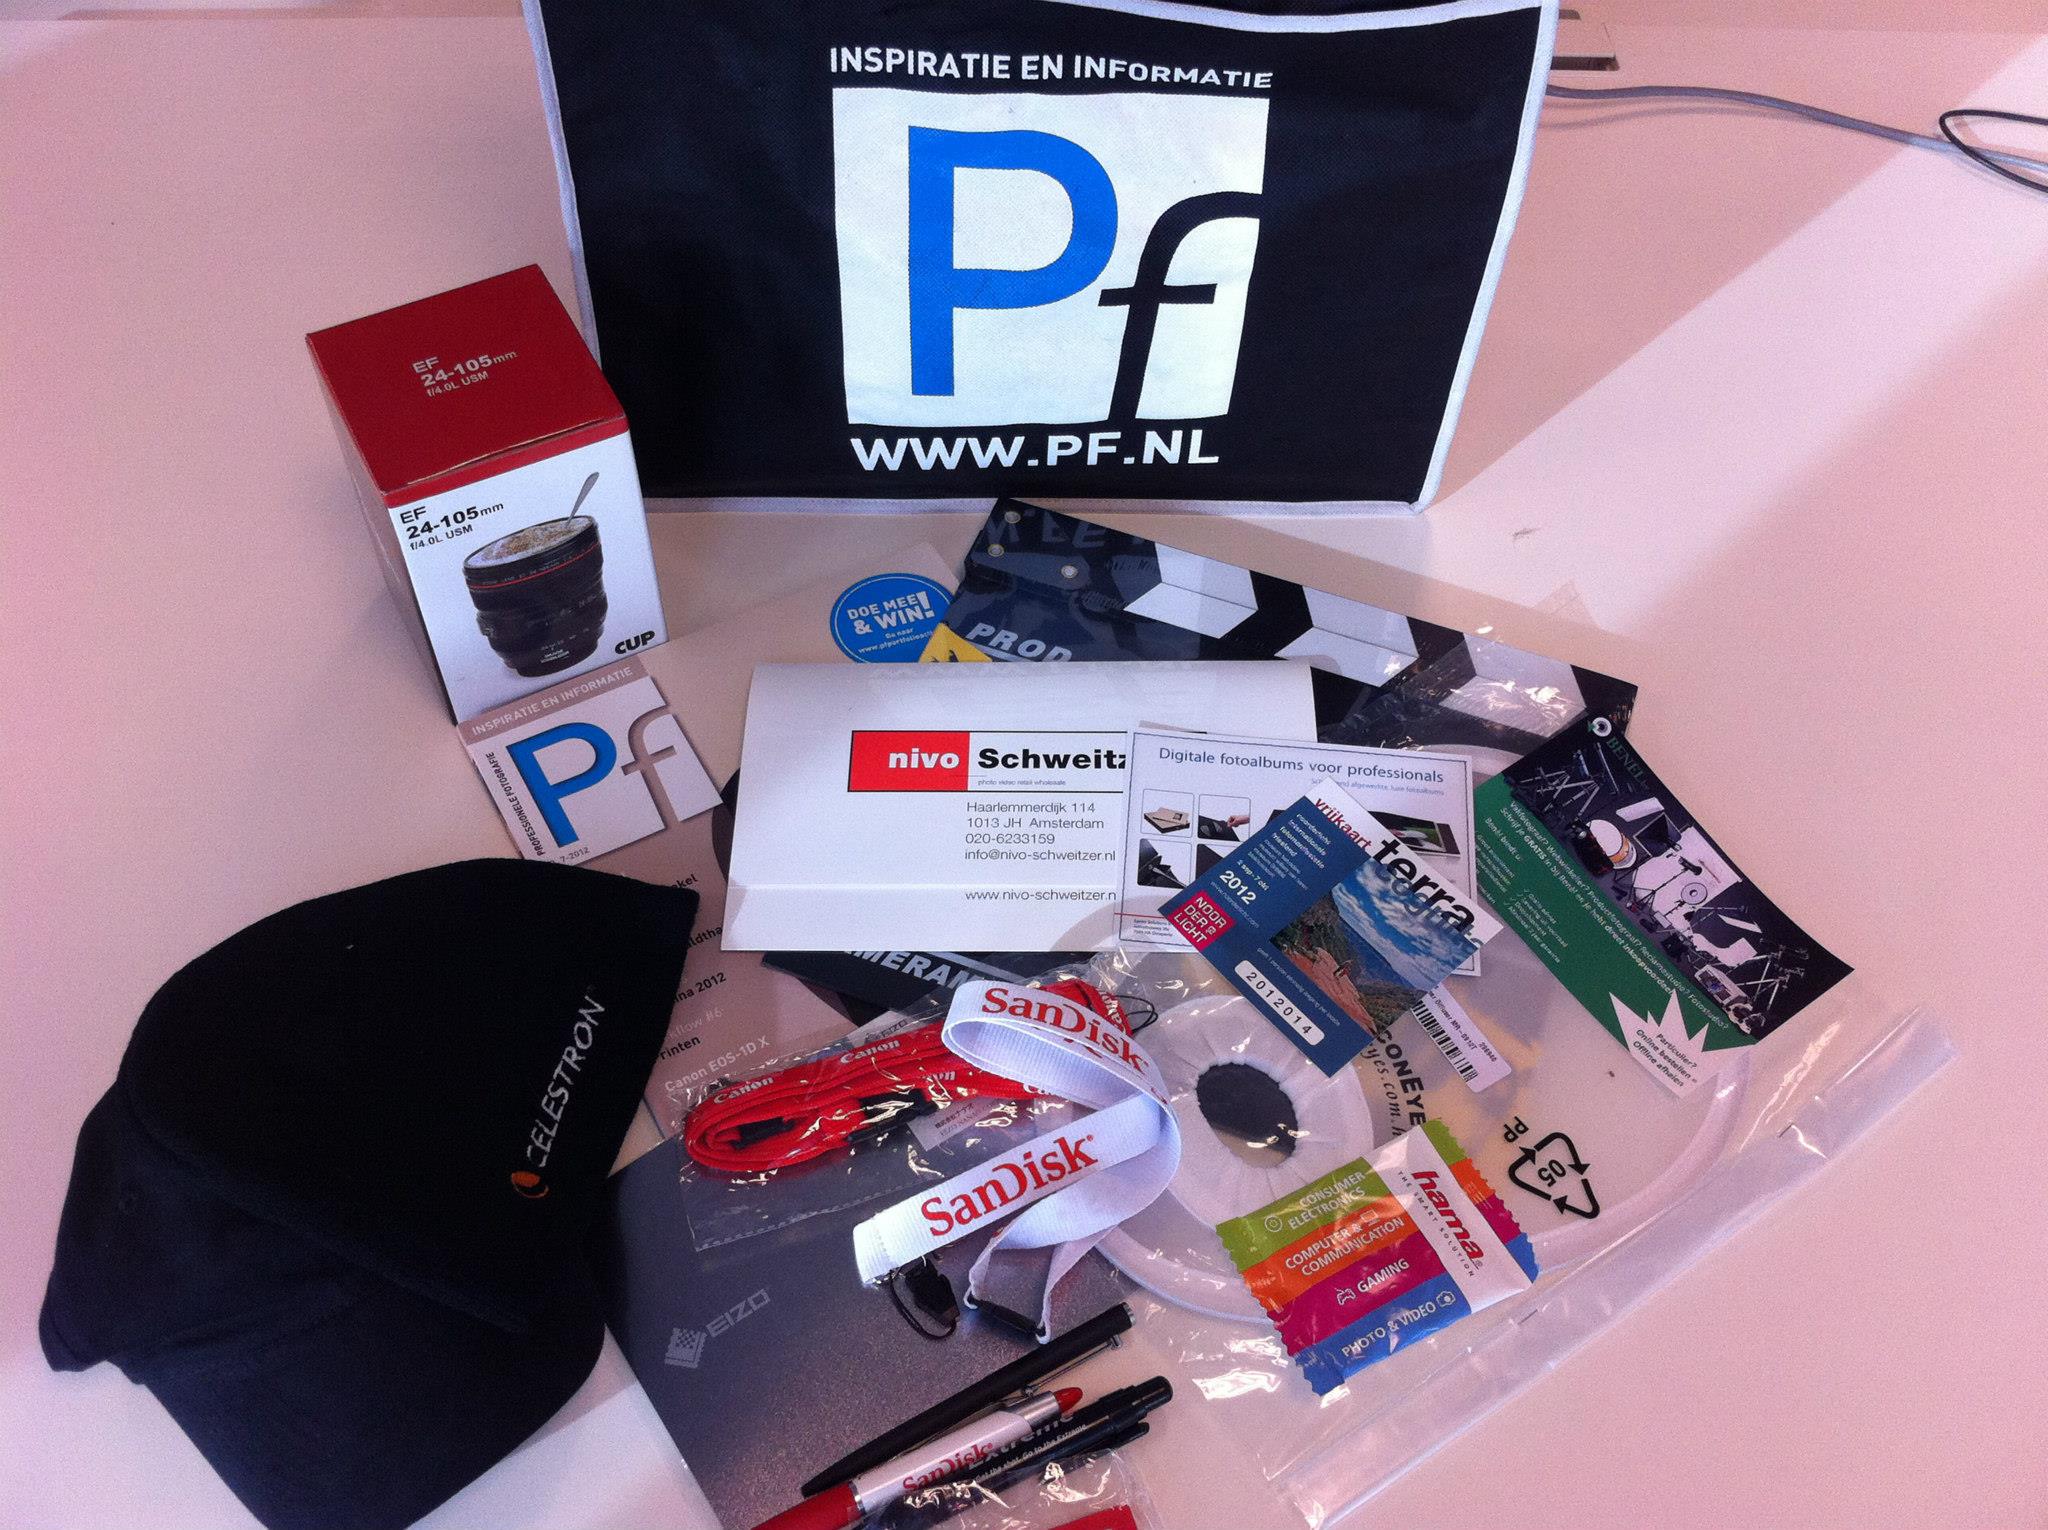 Allgifts levert goodiebags aan Pf voor deelnemers Photokina-reis